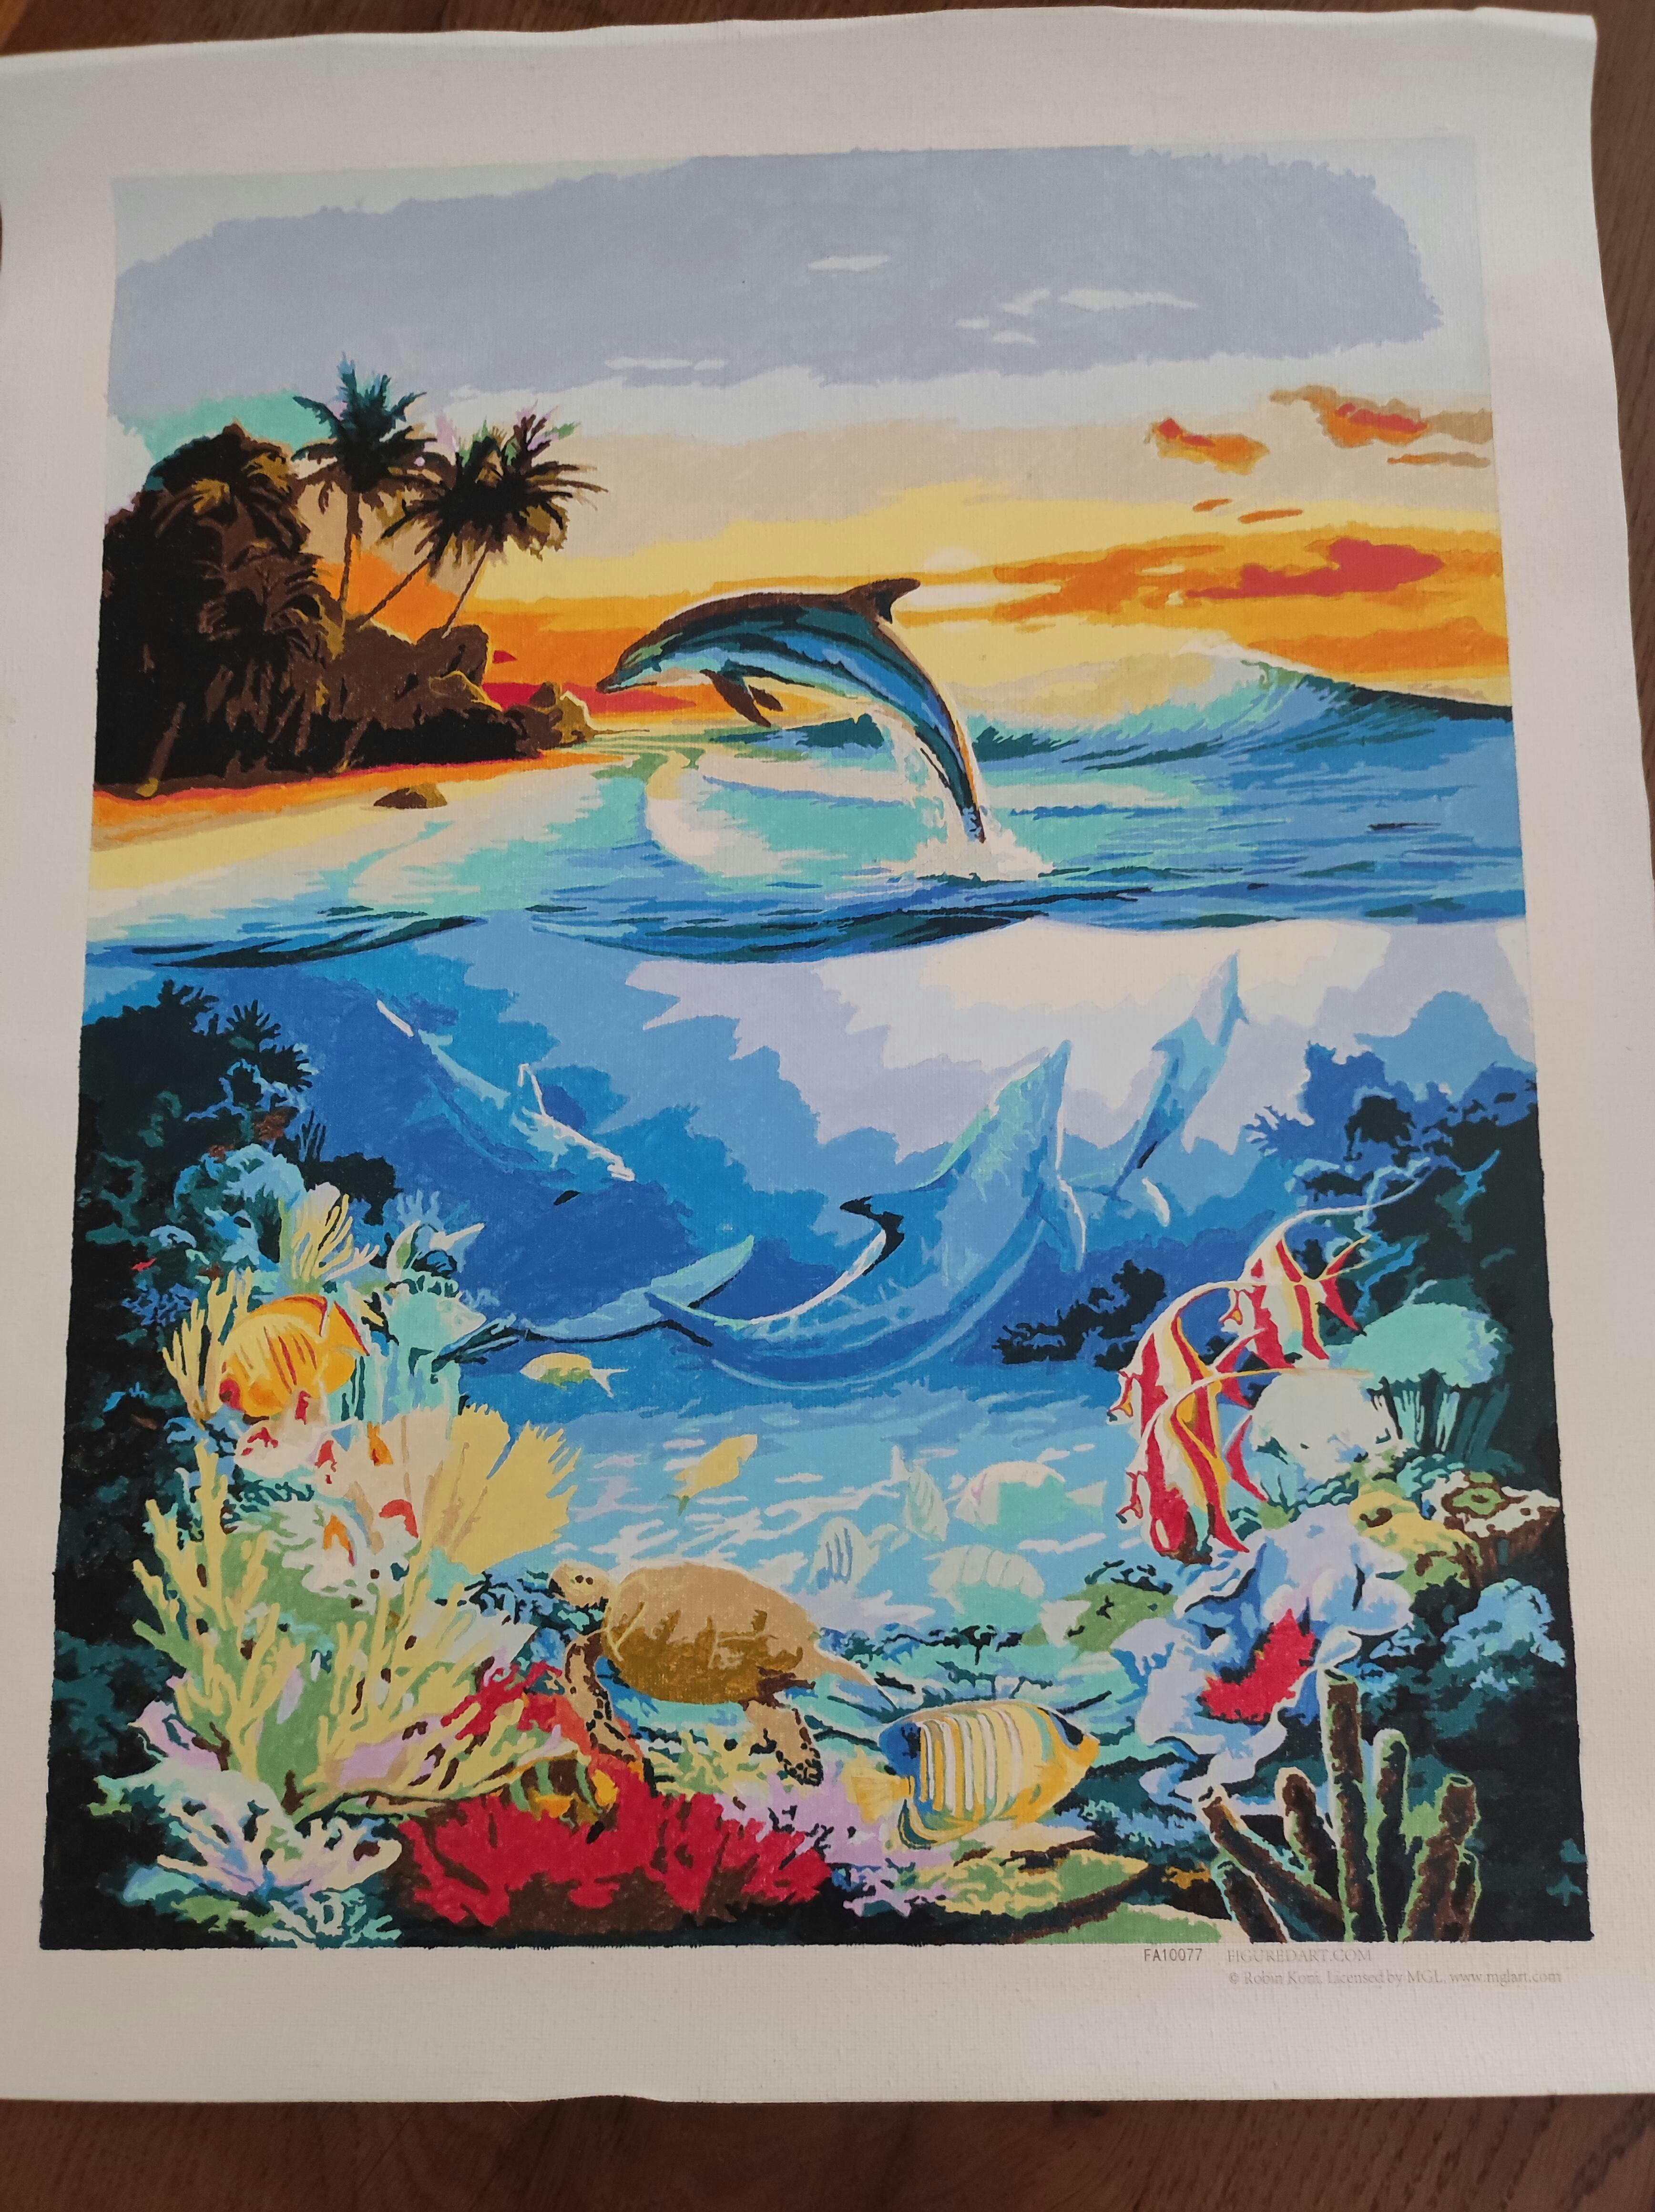 Peinture par numéro dauphin dessin sur toile cadeau bricolage photos par  numéros Kits animaux peintures peintes à la main décor à la maison peinture  à l'huile 16x20 pouces : : Jeux et